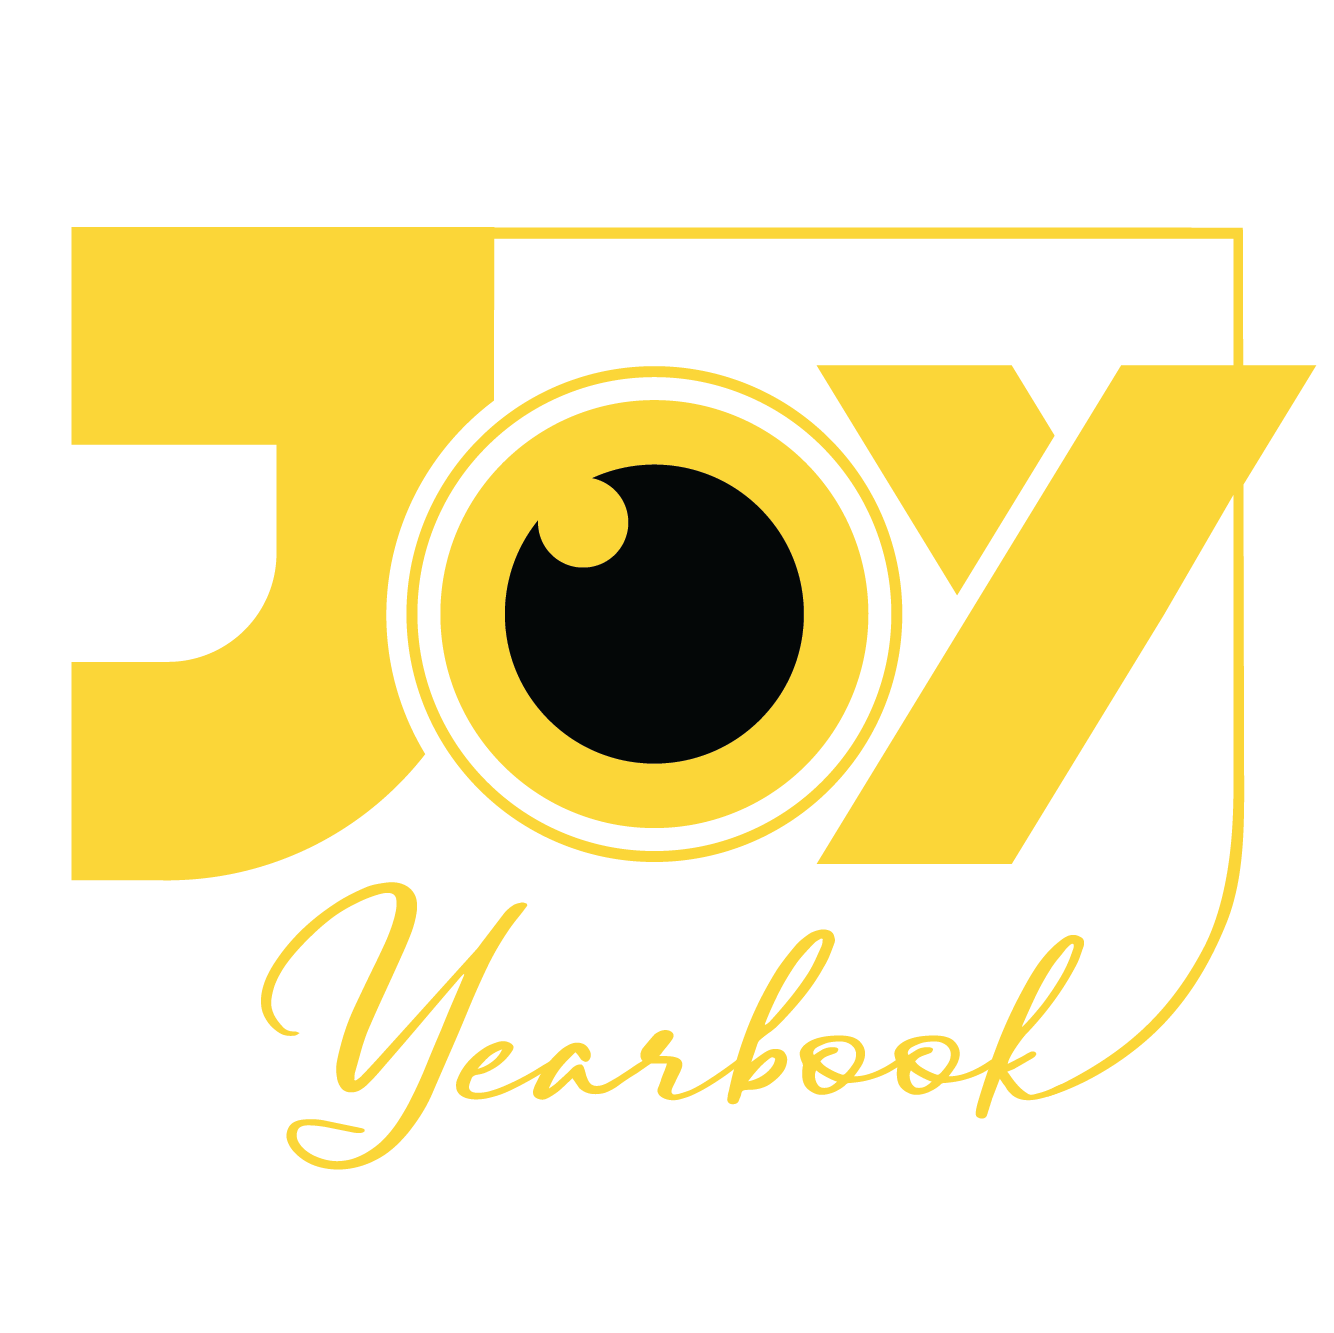 Kỷ Yếu Joy – Chụp Ảnh Kỷ Yếu